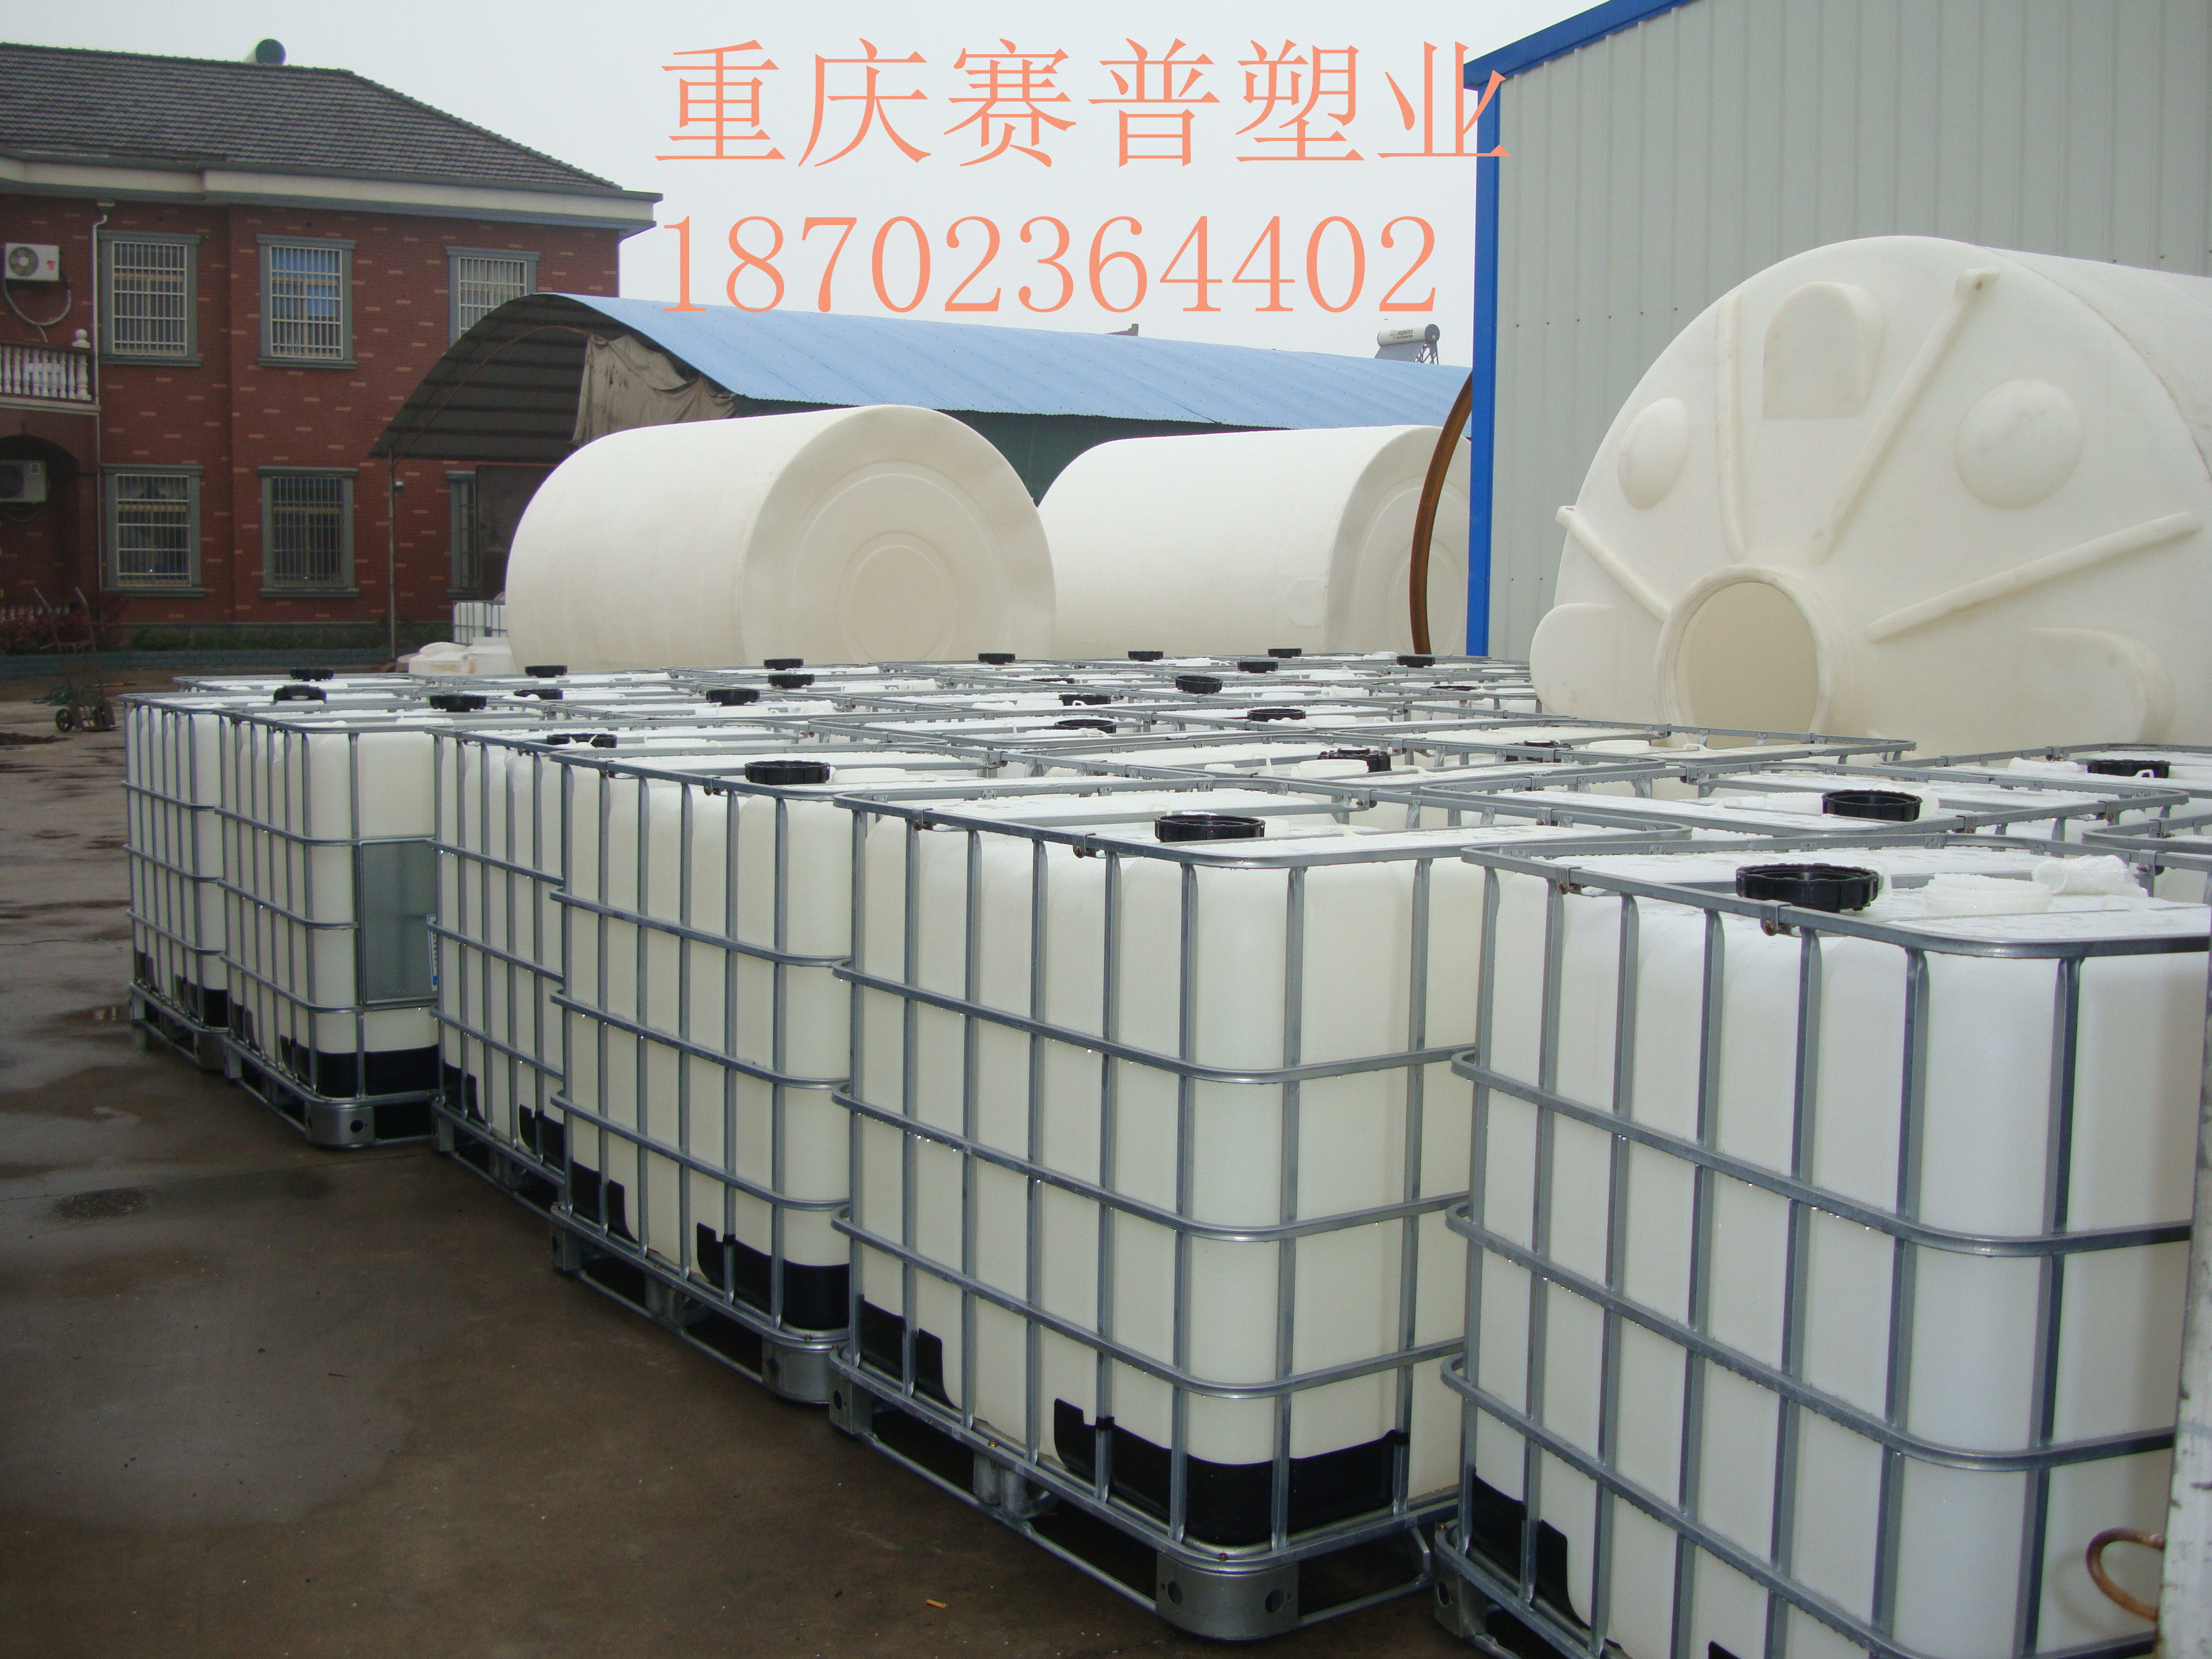 厂家直销吨桶|化工桶|IBC化工桶|千升桶 IBC吨桶图片